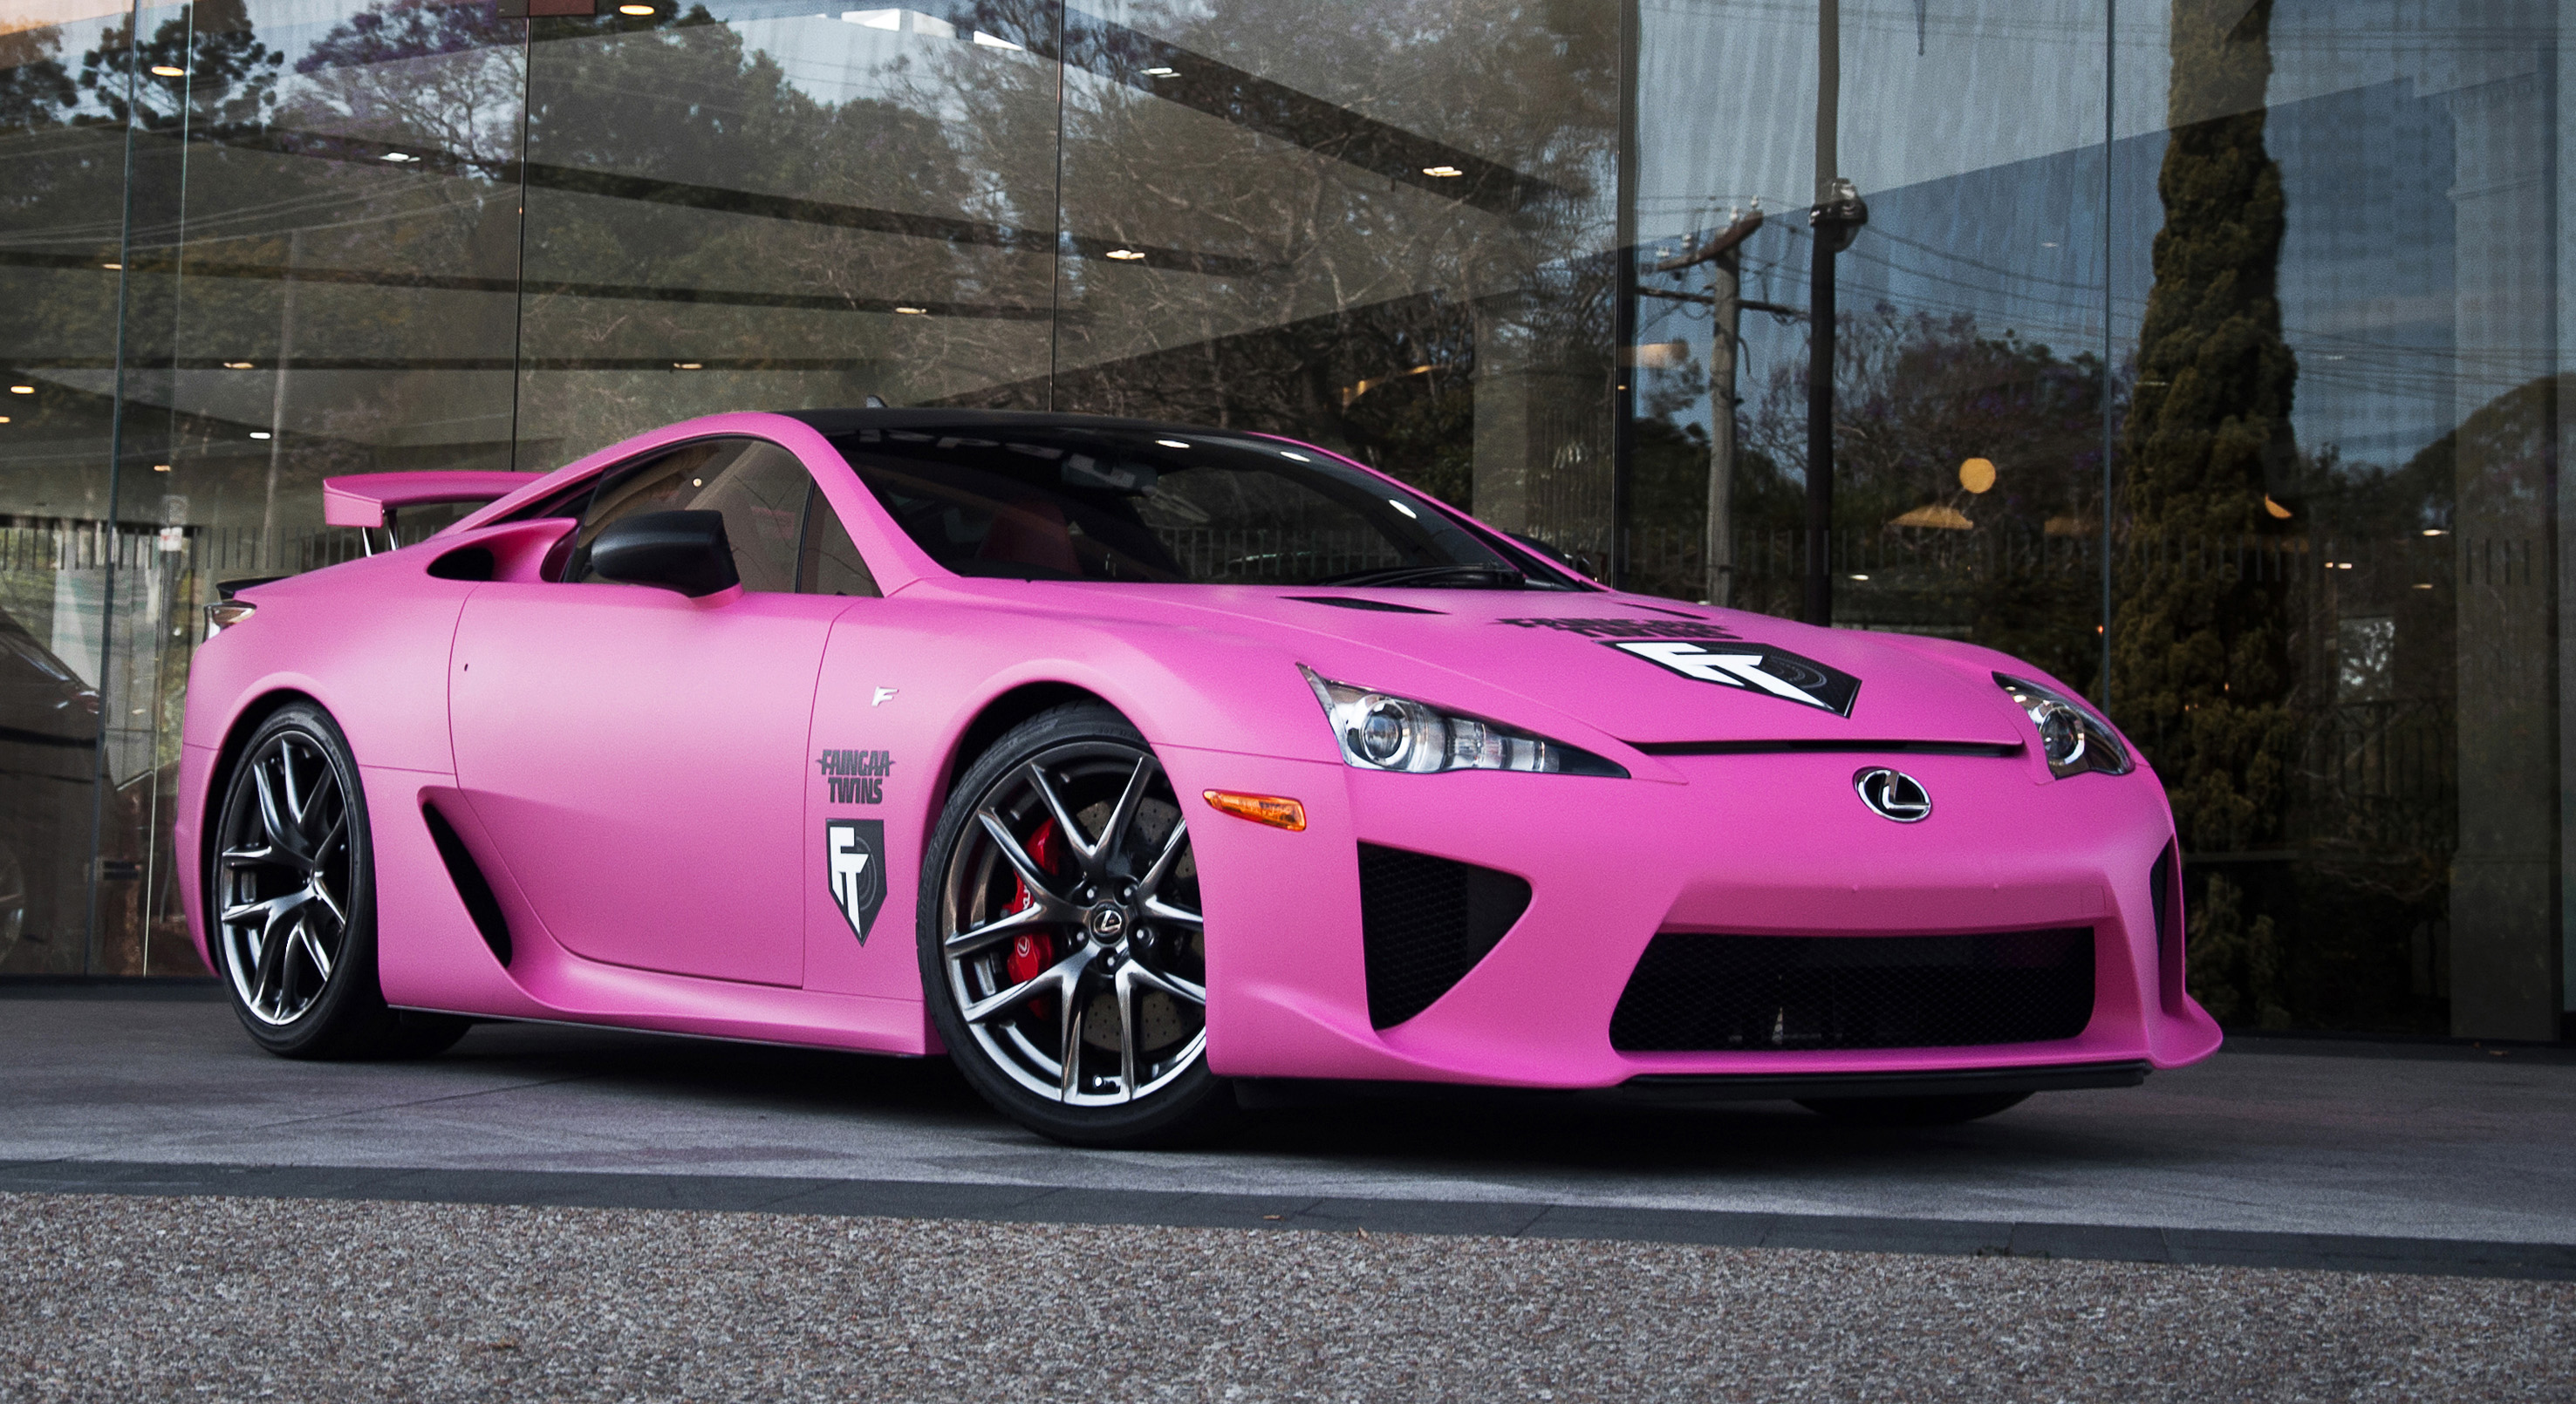 2012 Lexus Lf-a National Breast Cancer Awareness Edition - Pink Lexus Lfa , HD Wallpaper & Backgrounds